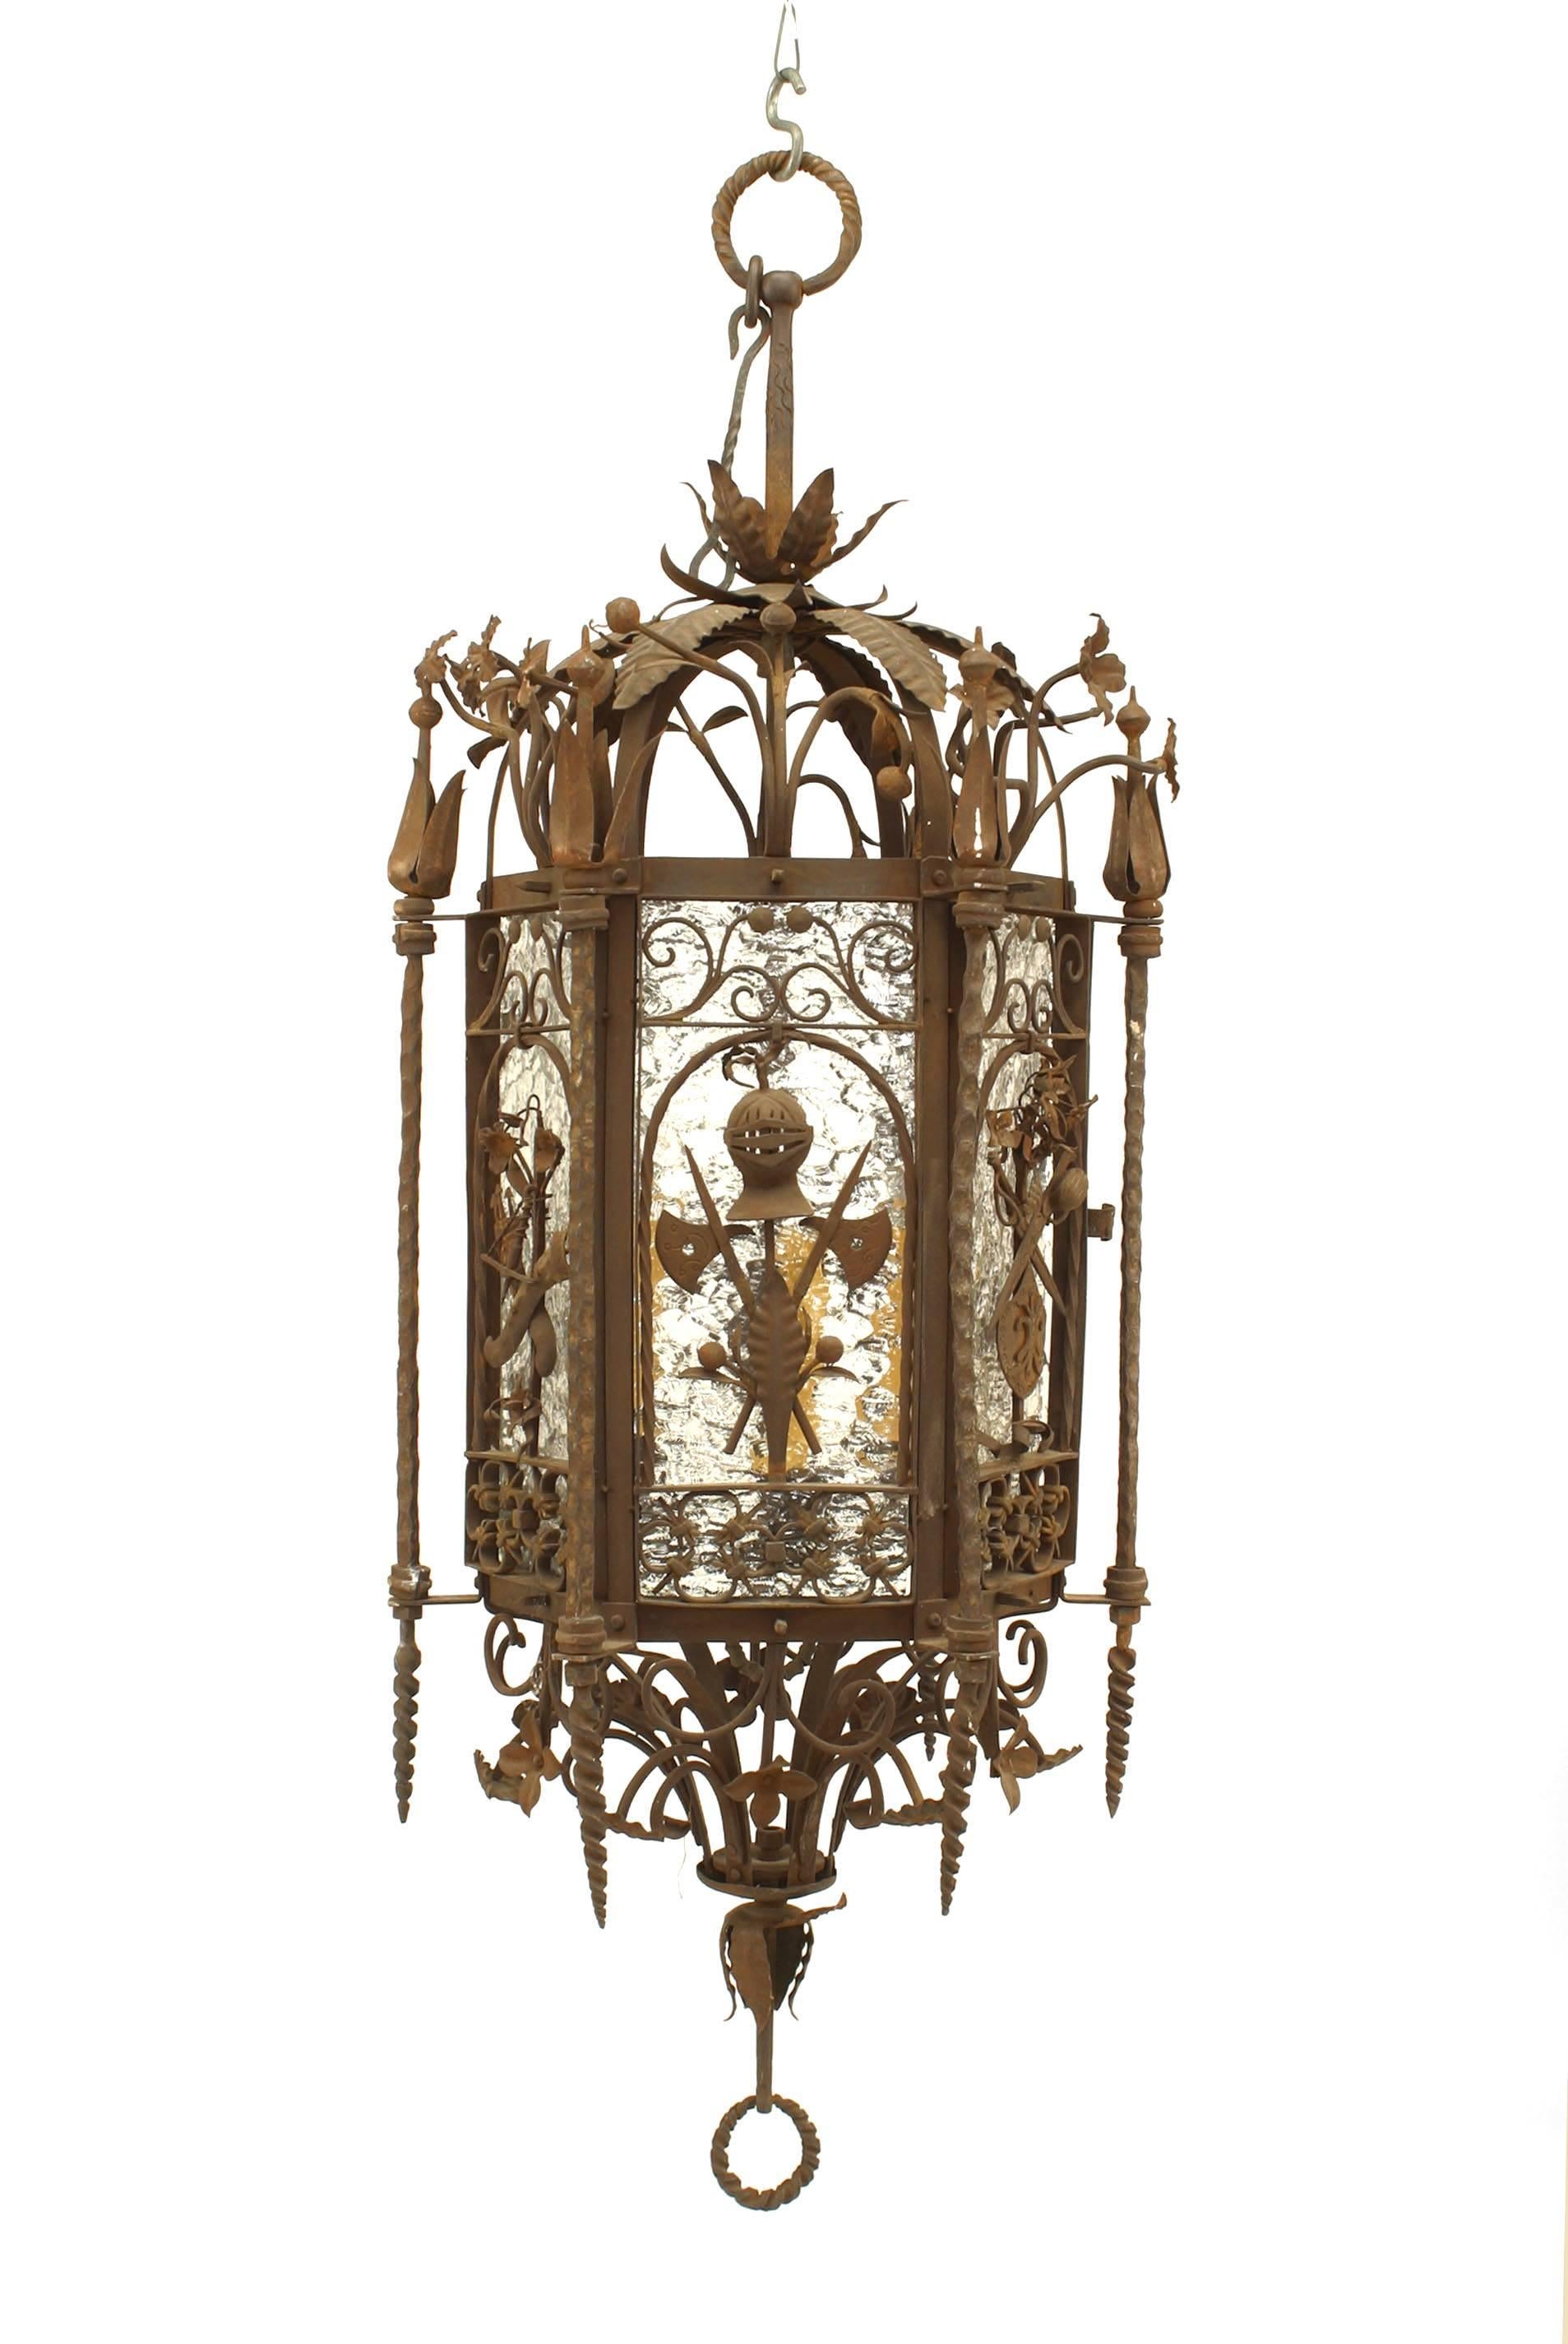 Lanterne suspendue à 6 côtés en fer forgé de style Renaissance italienne (19/20ème siècle) avec des motifs militaires et des panneaux en verre (attribué à : SAMUEL YELLIN)
